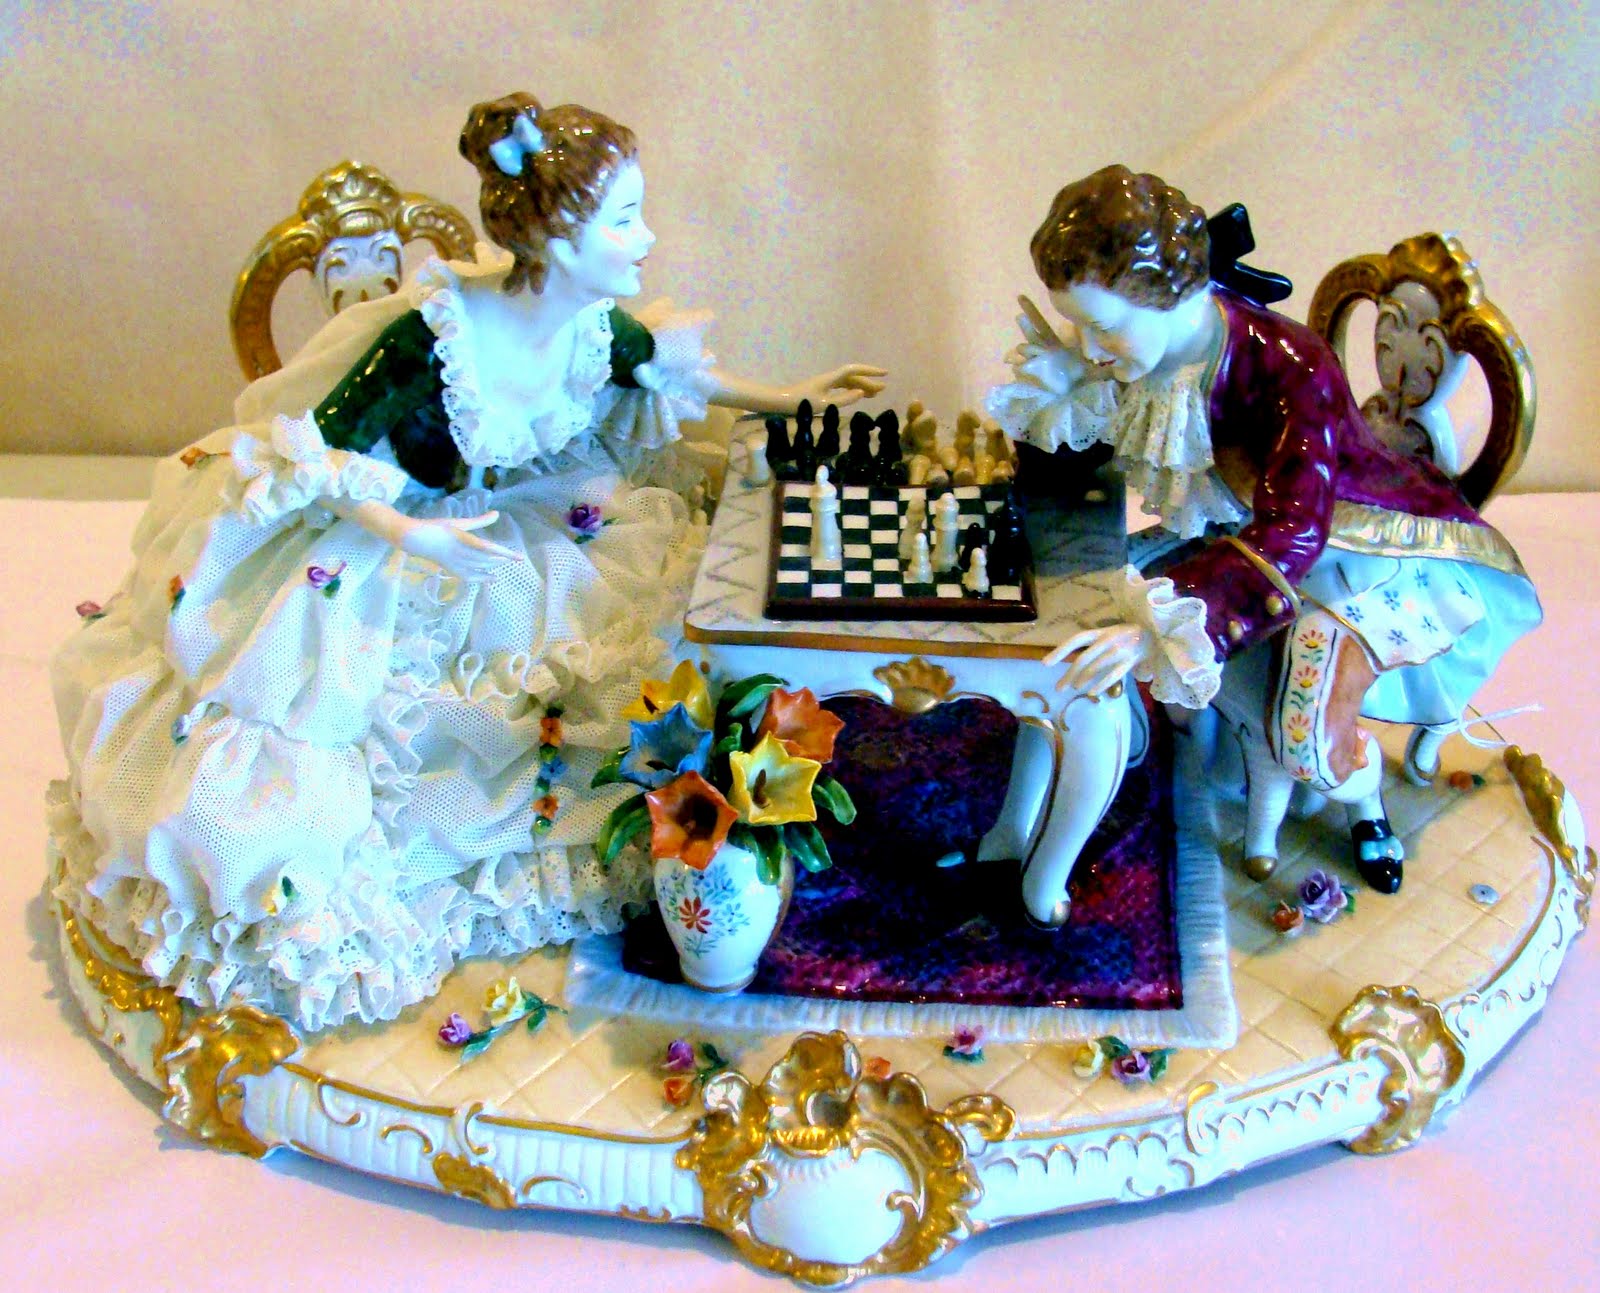 http://2.bp.blogspot.com/_ZiYFctMg1bM/S_GBdUHNFaI/AAAAAAAAACI/NLcgDxhH4F8/s1600/Dresden_Lace_Grouping_of_a_Game_of_Chess.jpg